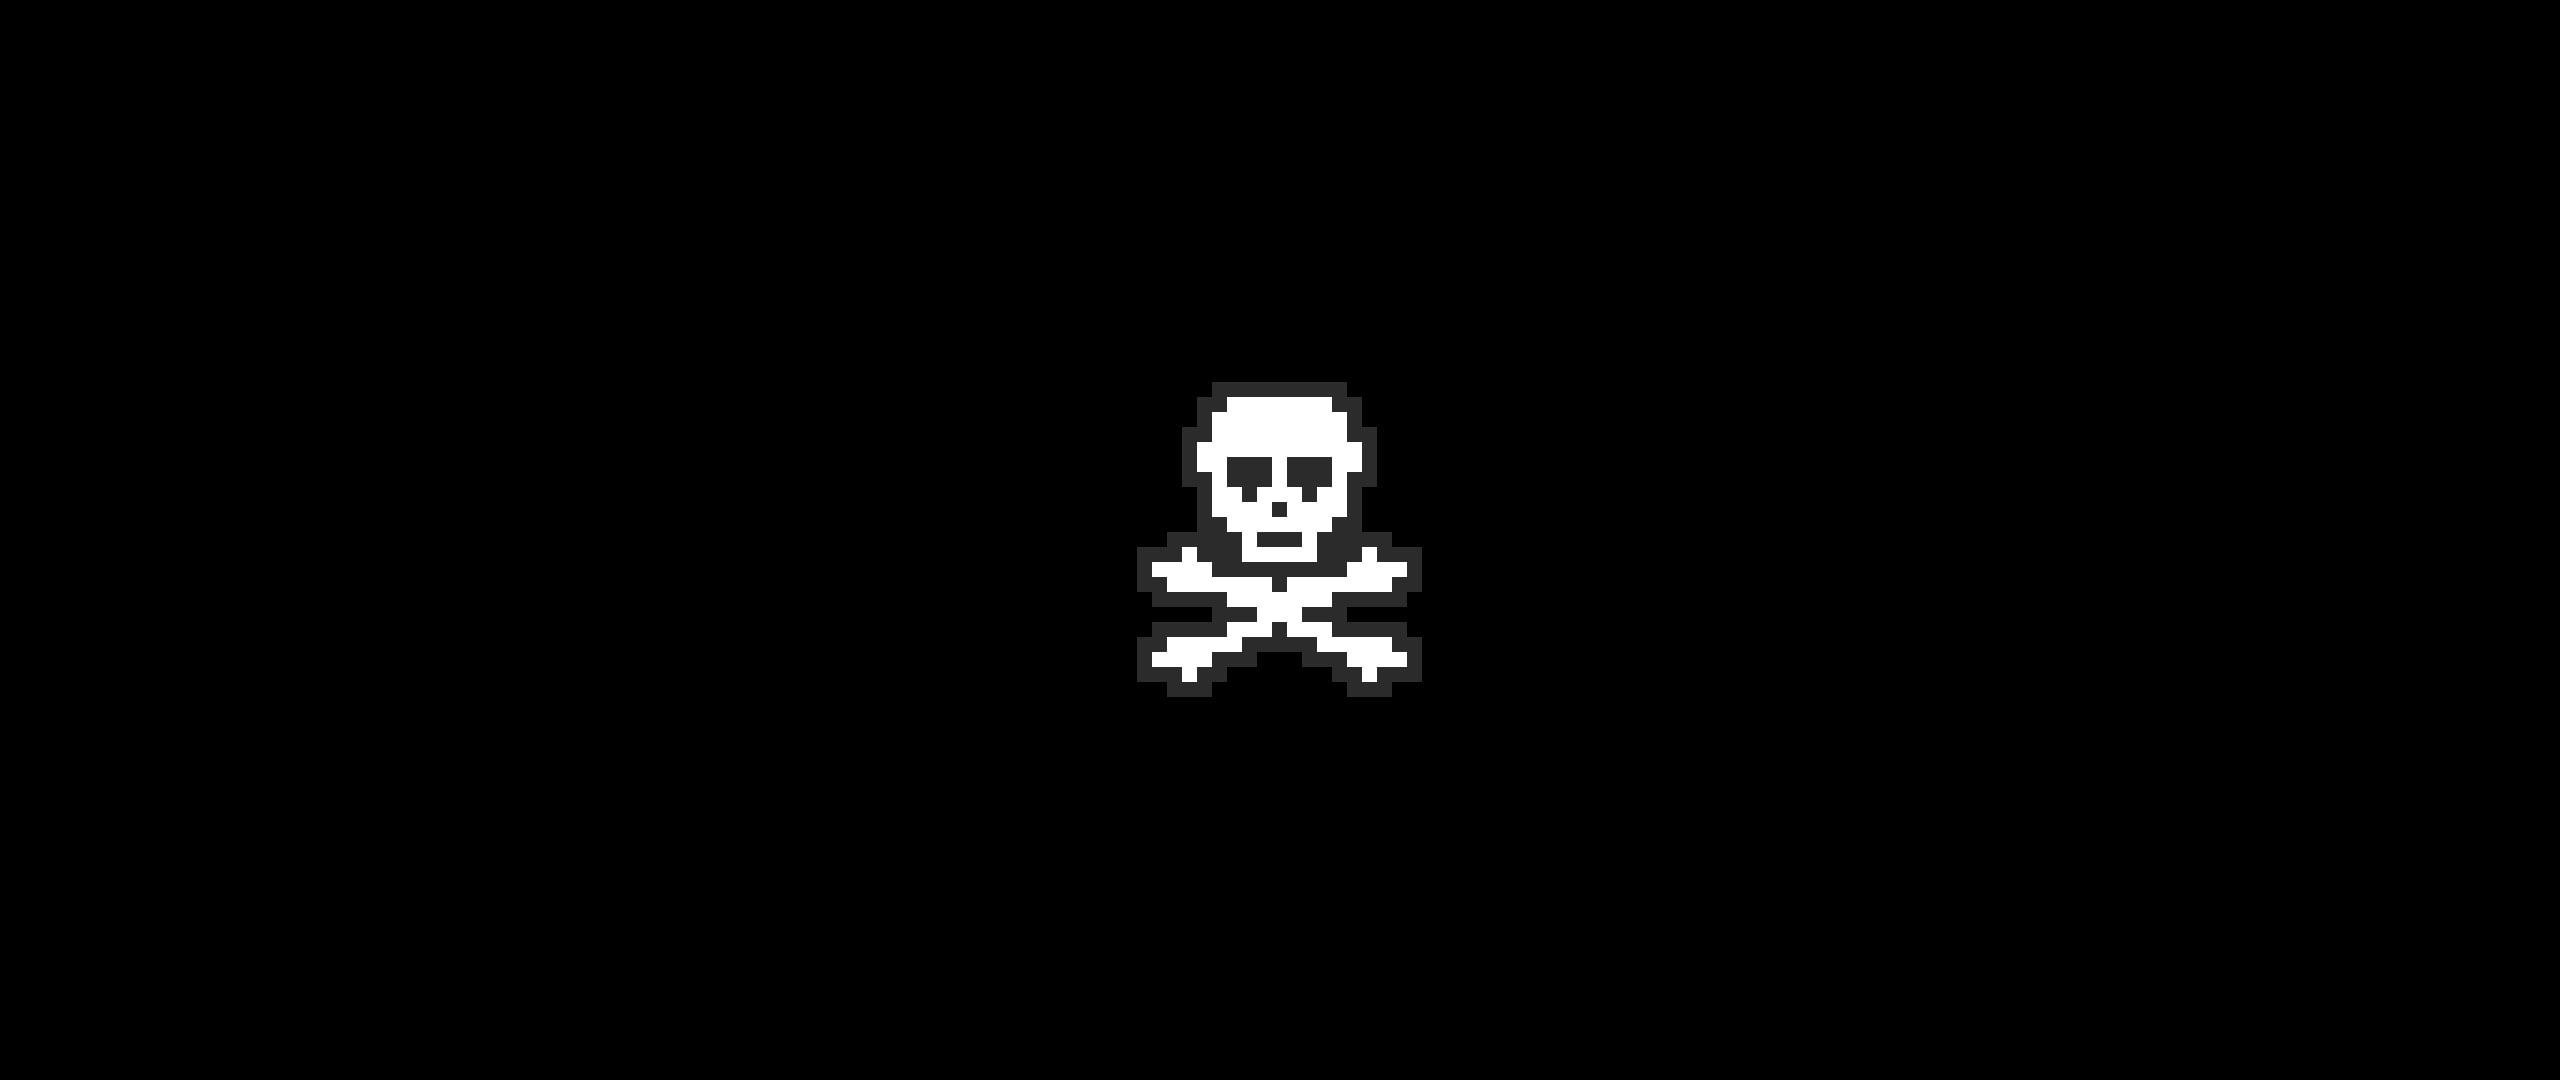 Skull and Bones, 16-bit, retro games